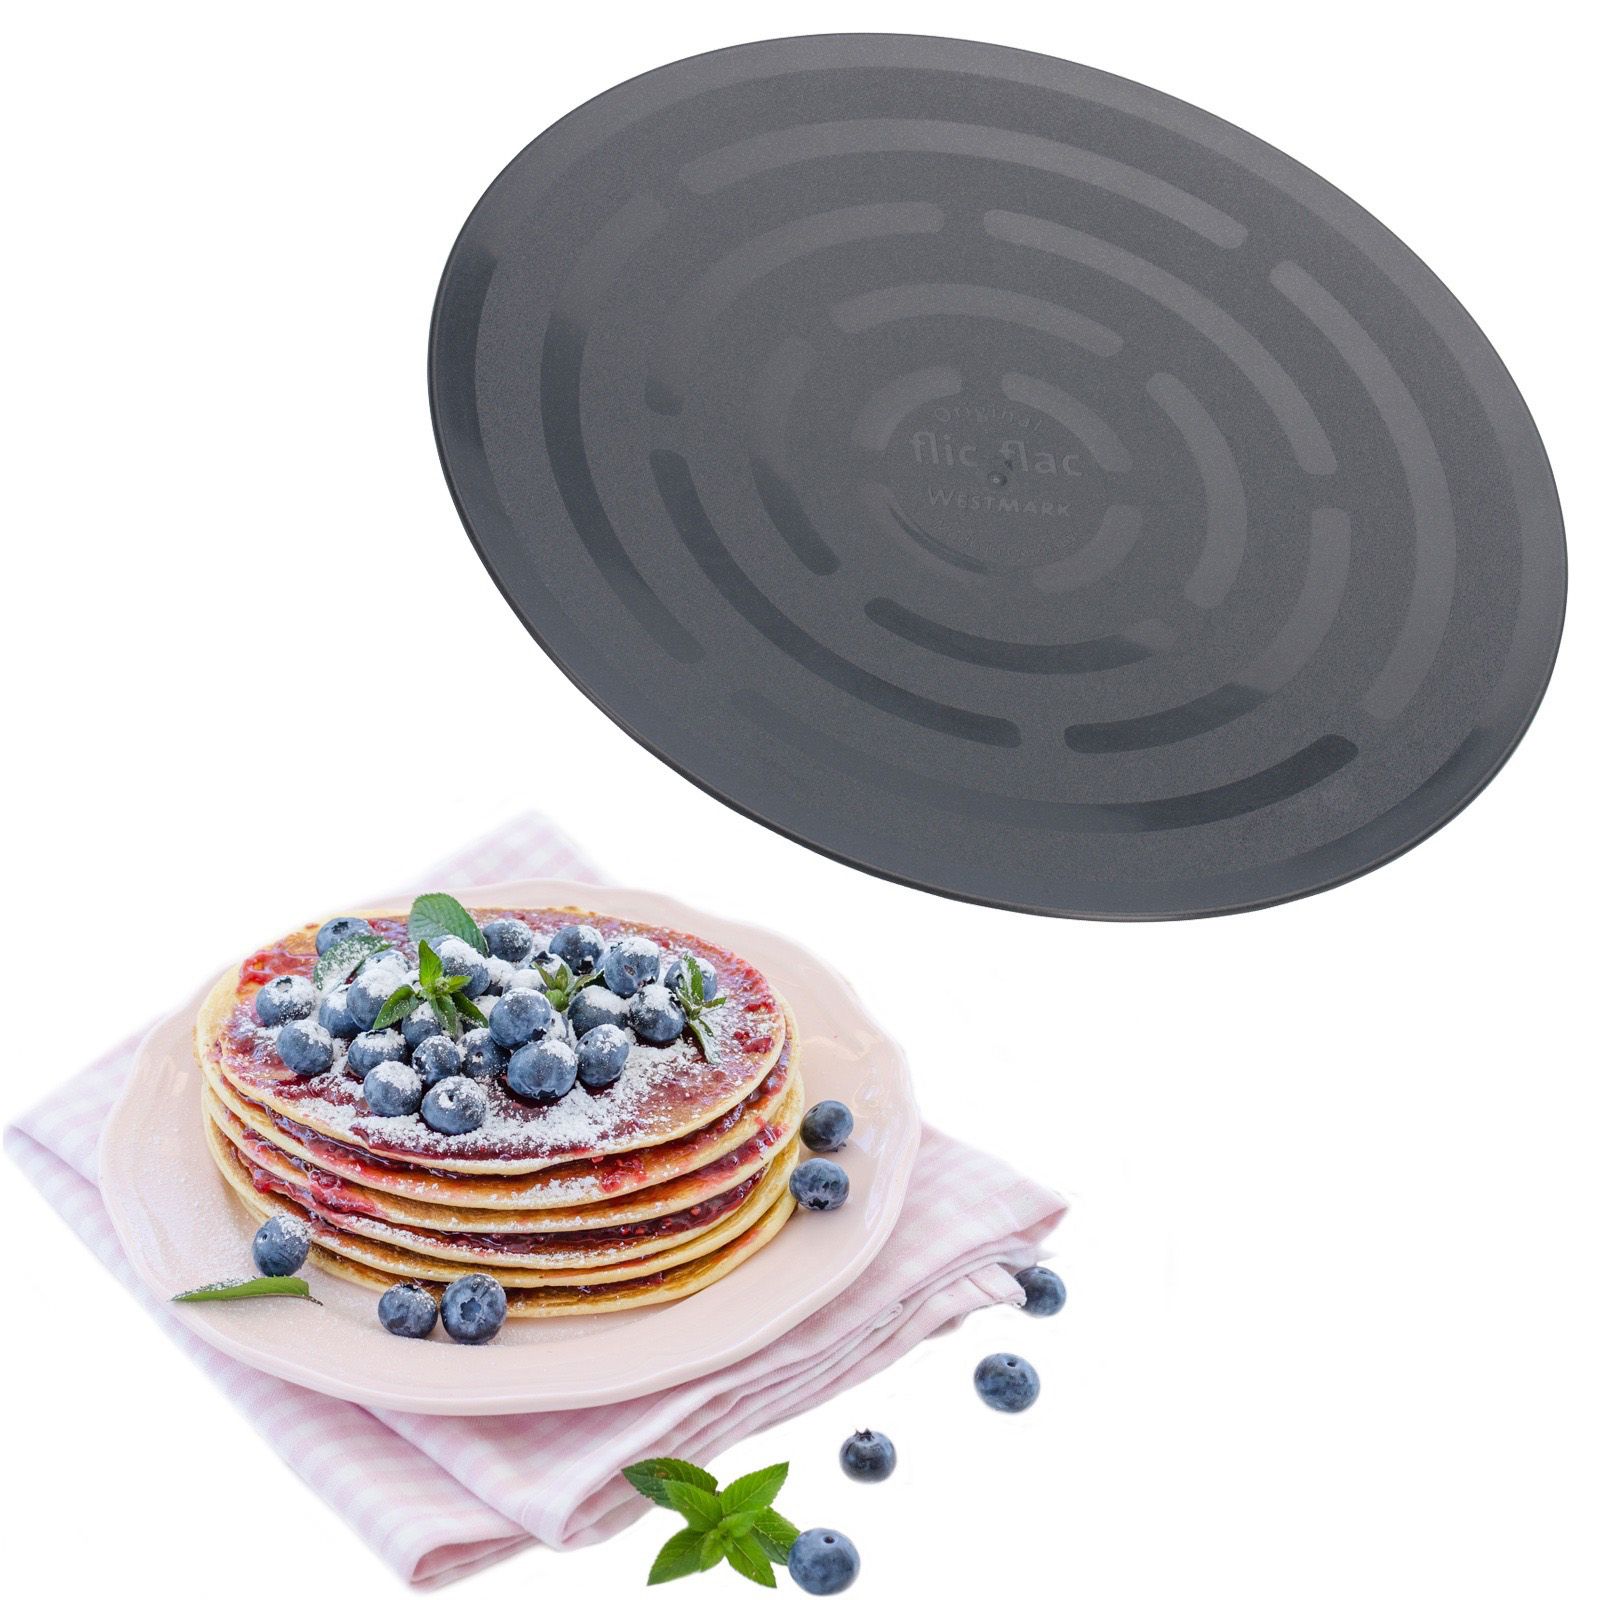  Pfannkuchen- / Omelettwender   Flic-Flac    praktischer Helfer, der sicherstellt, dass die  Pfannkuchen beim Wenden nicht auseinanderfallen